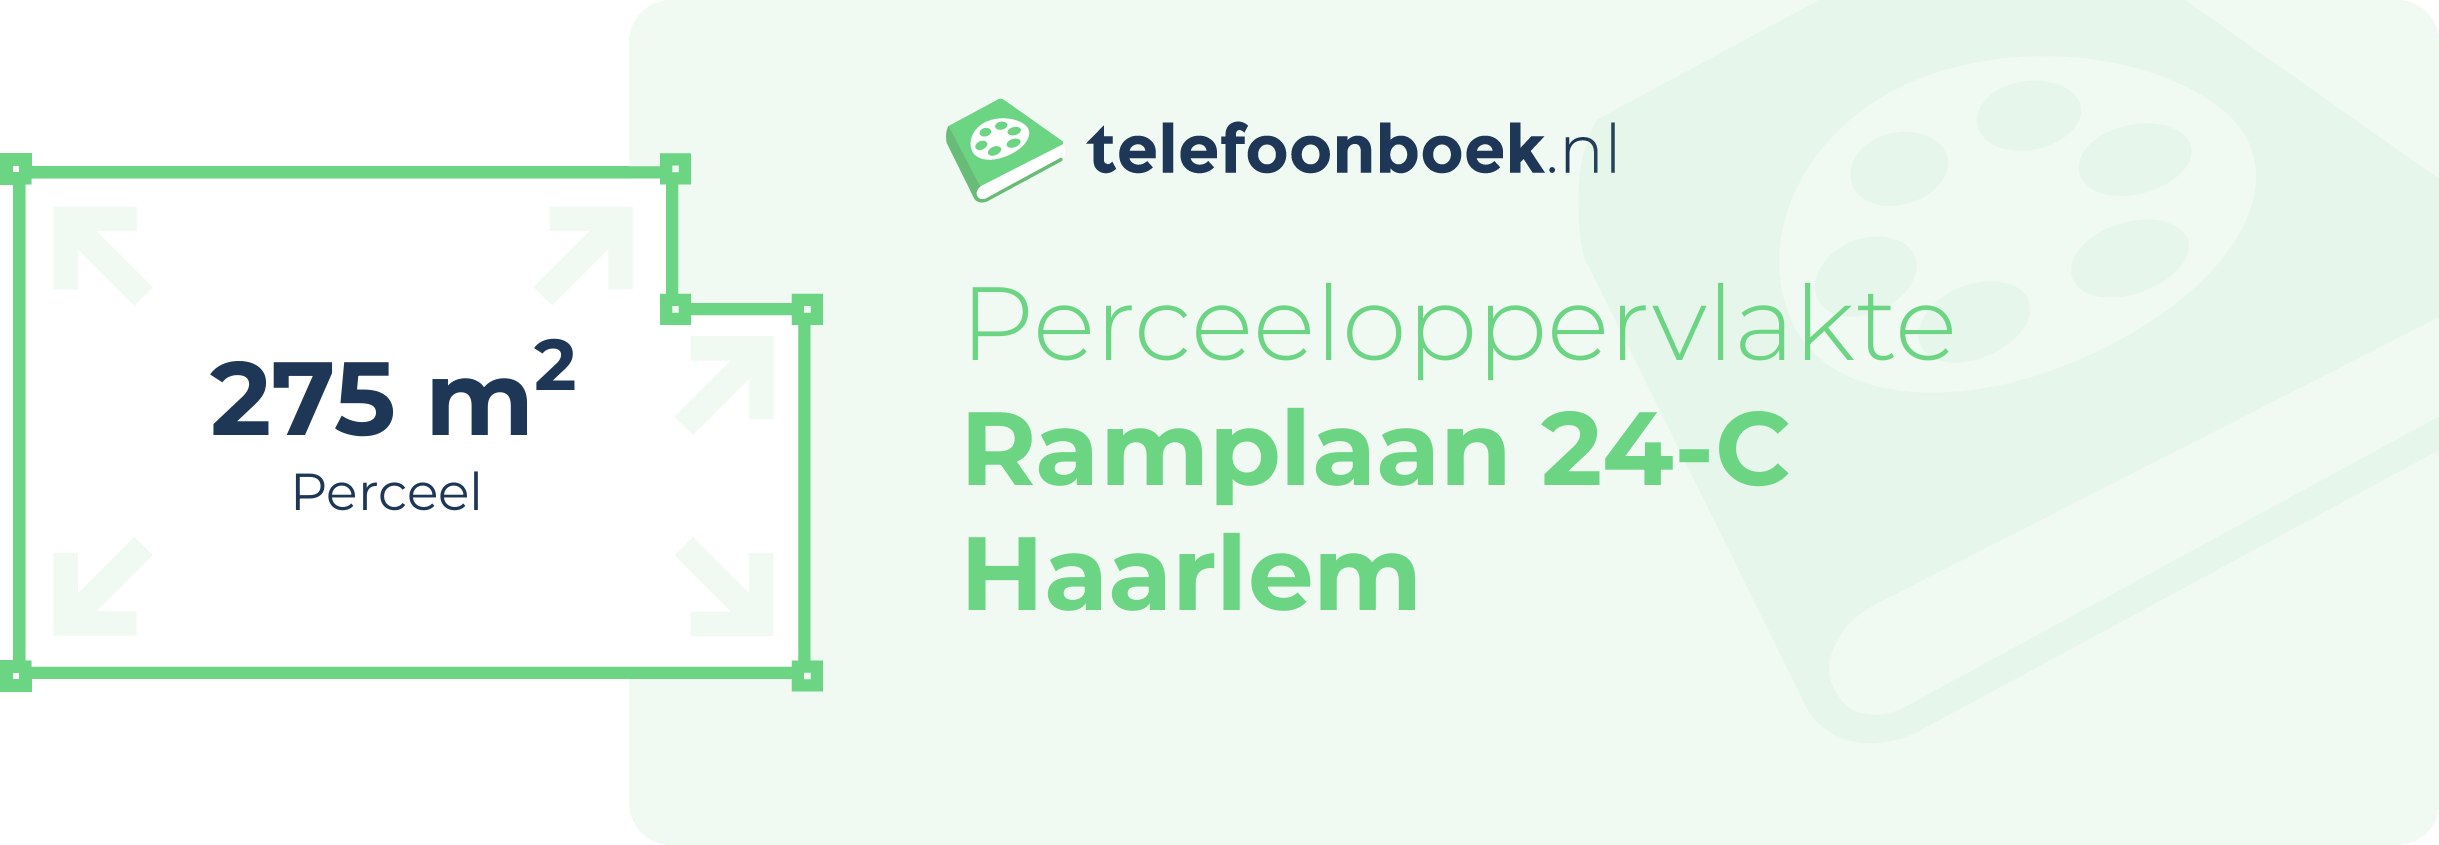 Perceeloppervlakte Ramplaan 24-C Haarlem